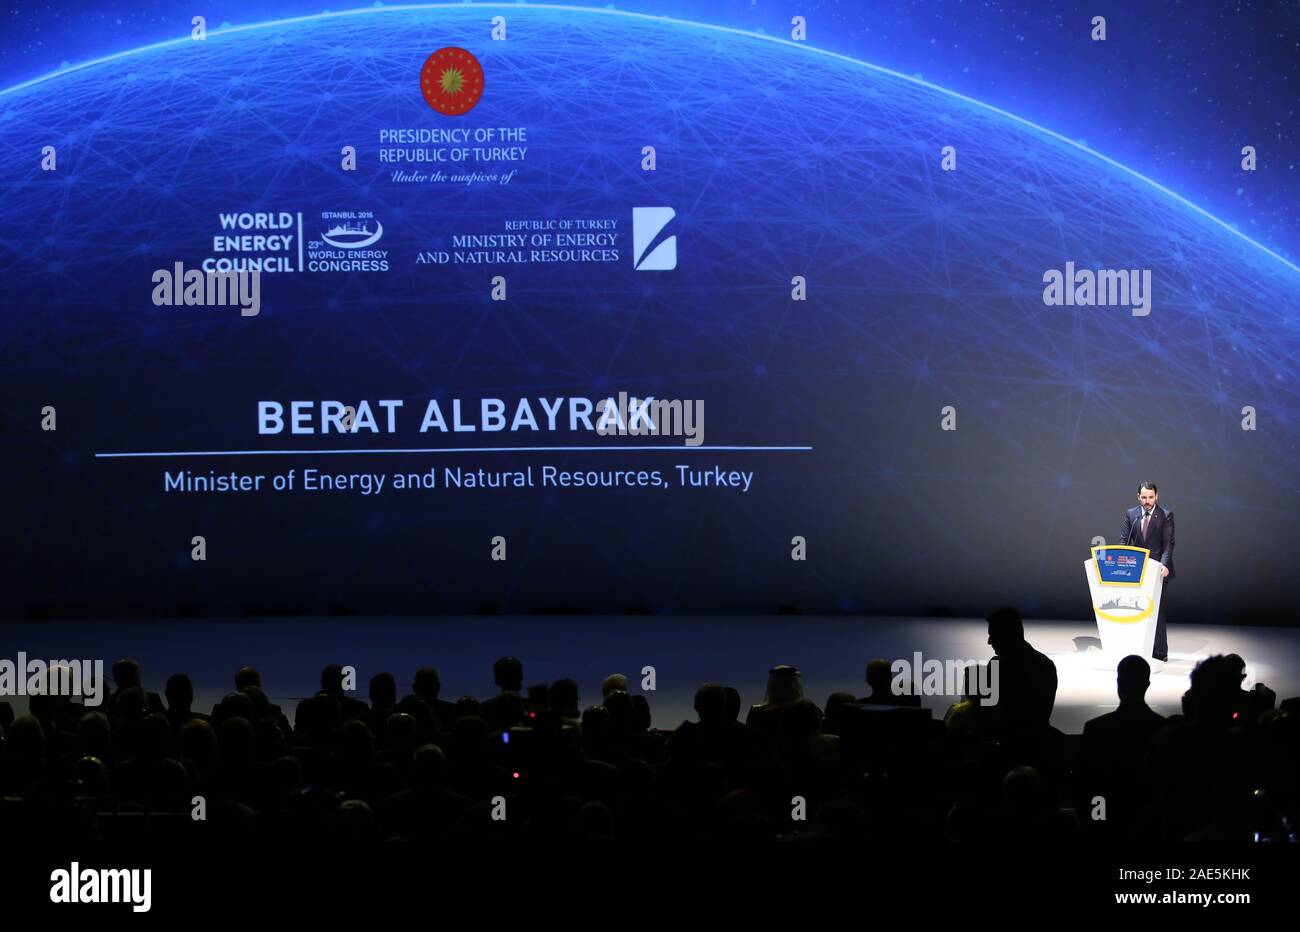 Istanbul, TURQUIE - 10 OCTOBRE : le ministre turc de l'énergie et des ressources naturelles Berat Albayrak a prononcé son discours lors de la cérémonie d'ouverture du 23ème Congrès mondial de l'énergie, le 10 octobre 2016, à Istanbul, en Turquie. Banque D'Images